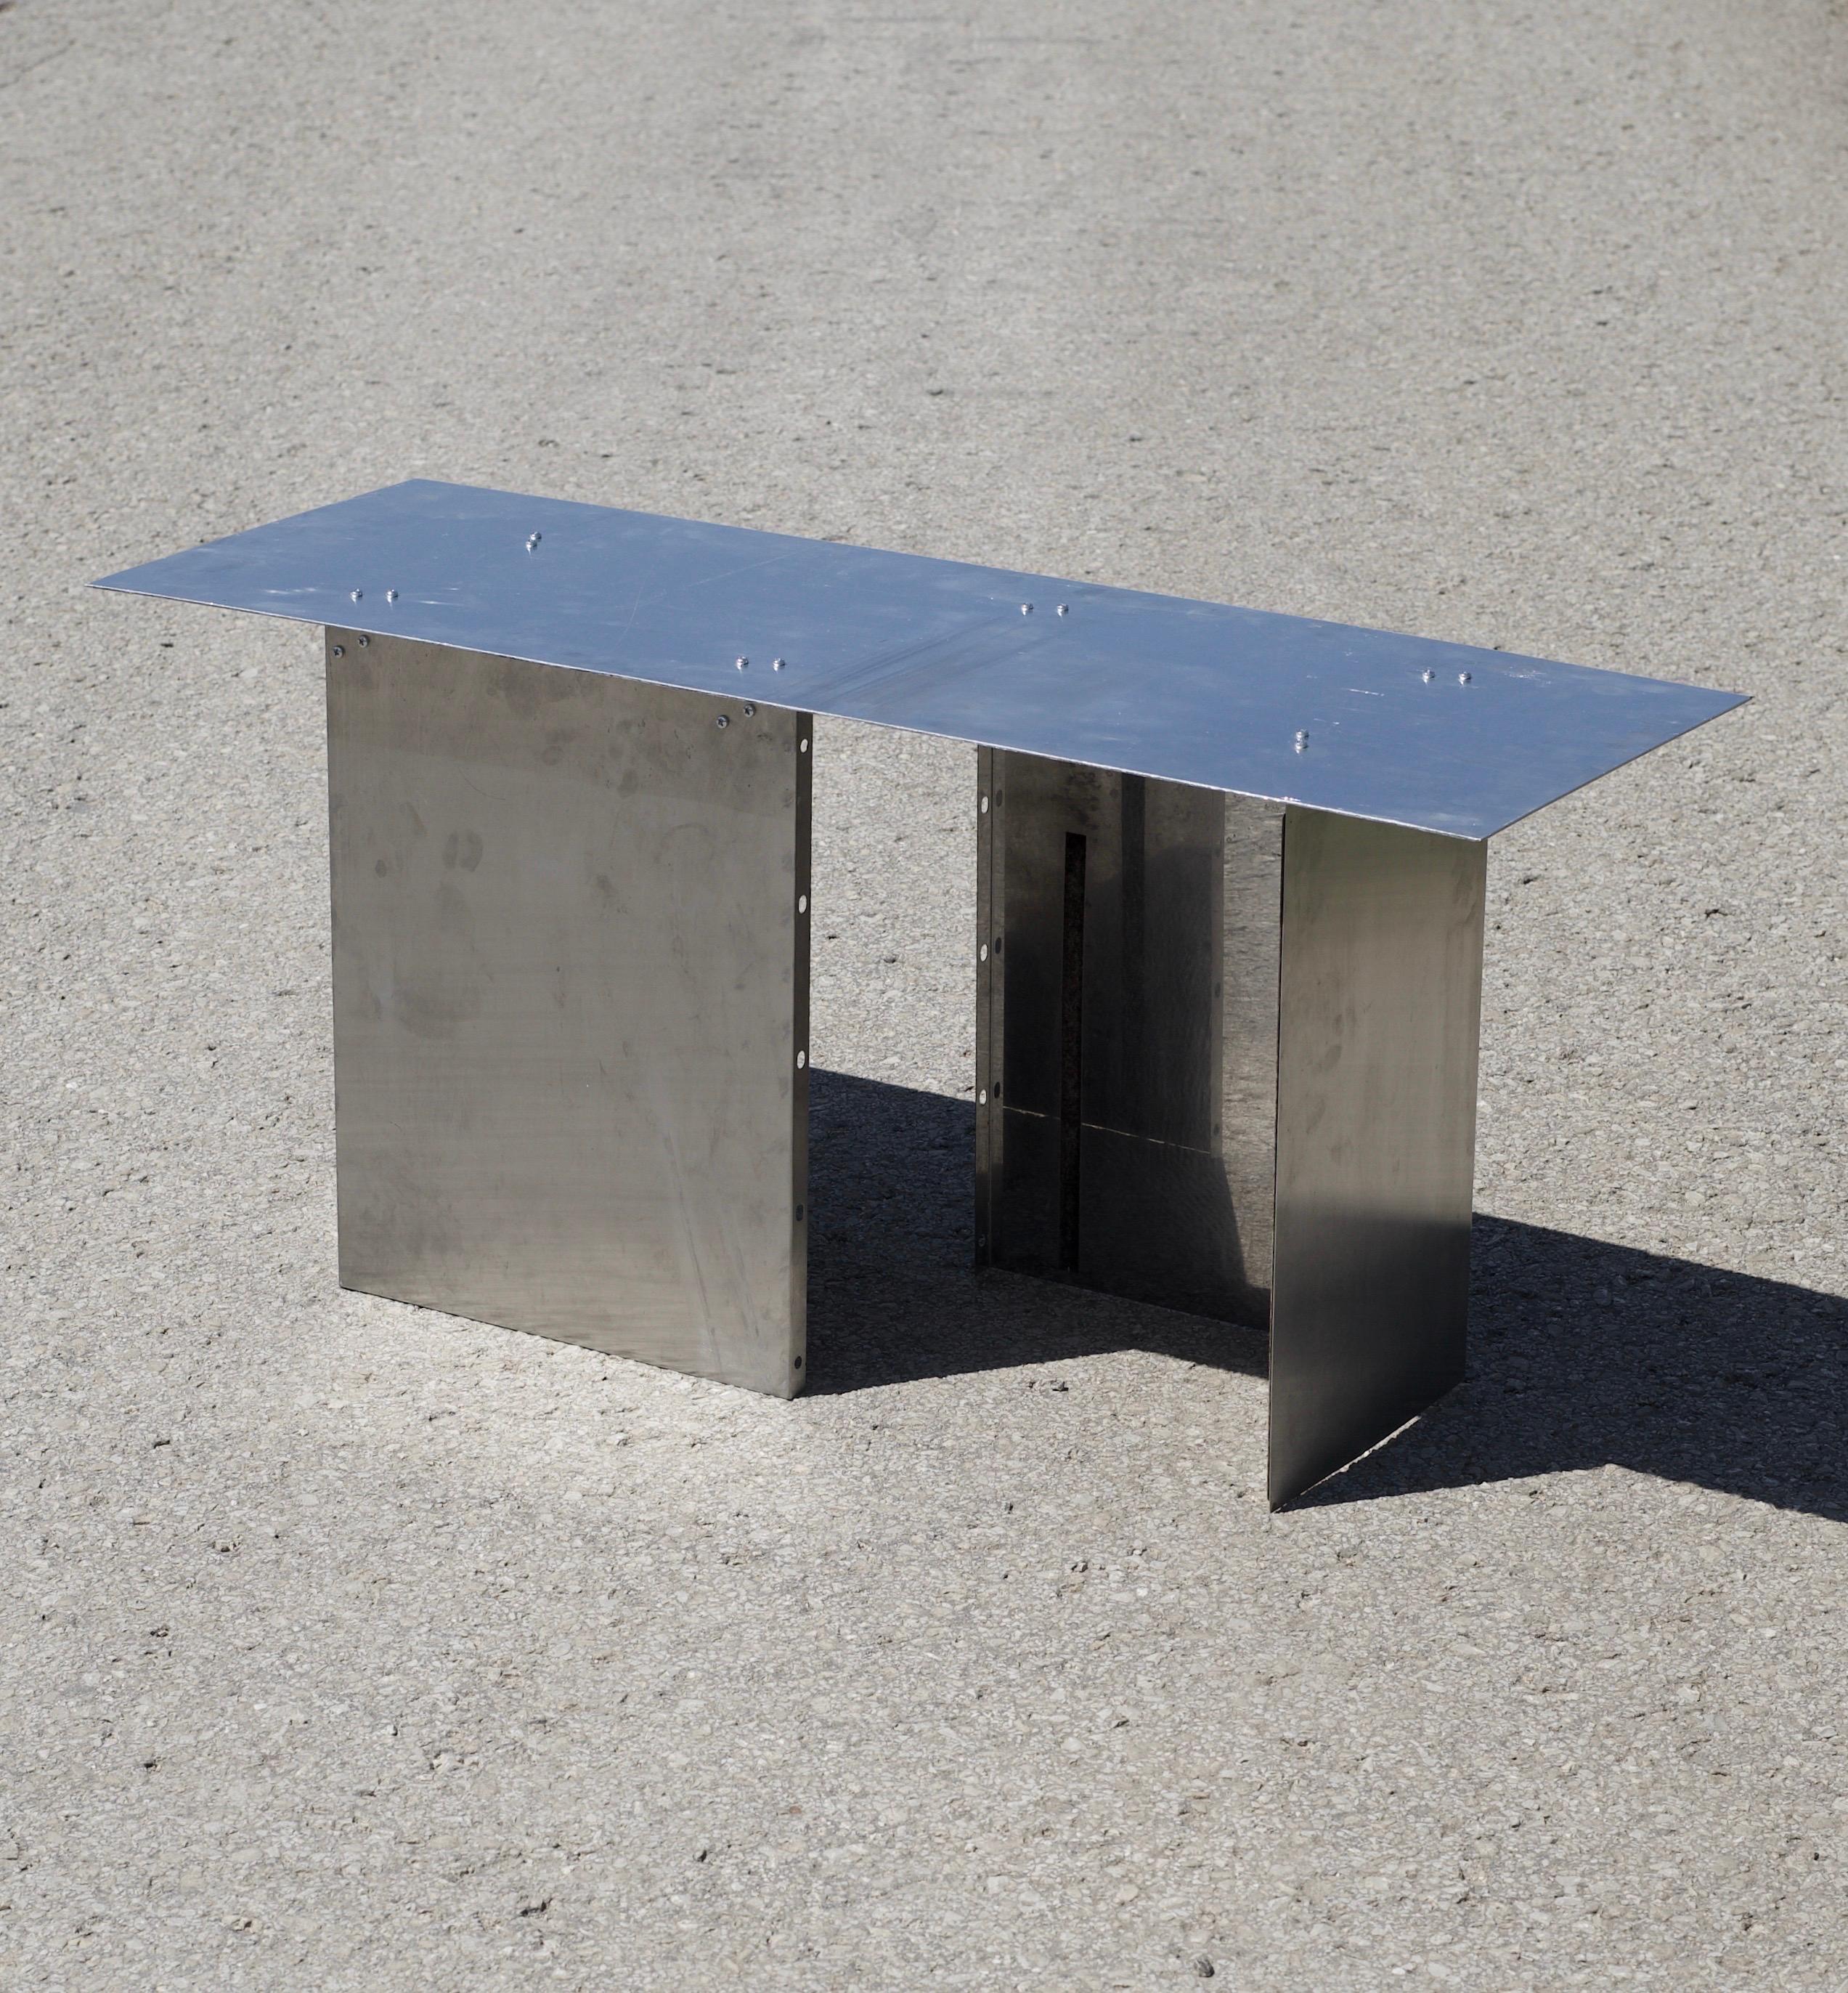 Table de salon 'S0-2H' de Maximilian Hofmann
Dimensions : D 40, L 100, H 45 cm
Matériaux : aluminium.
Finition : aluminium roulé et poli.
Poids : 9,8 kg. 
Epaisseur du matériau : 0,4 cm

Table de salon 'S0-2H' de la collection Undigested du designer